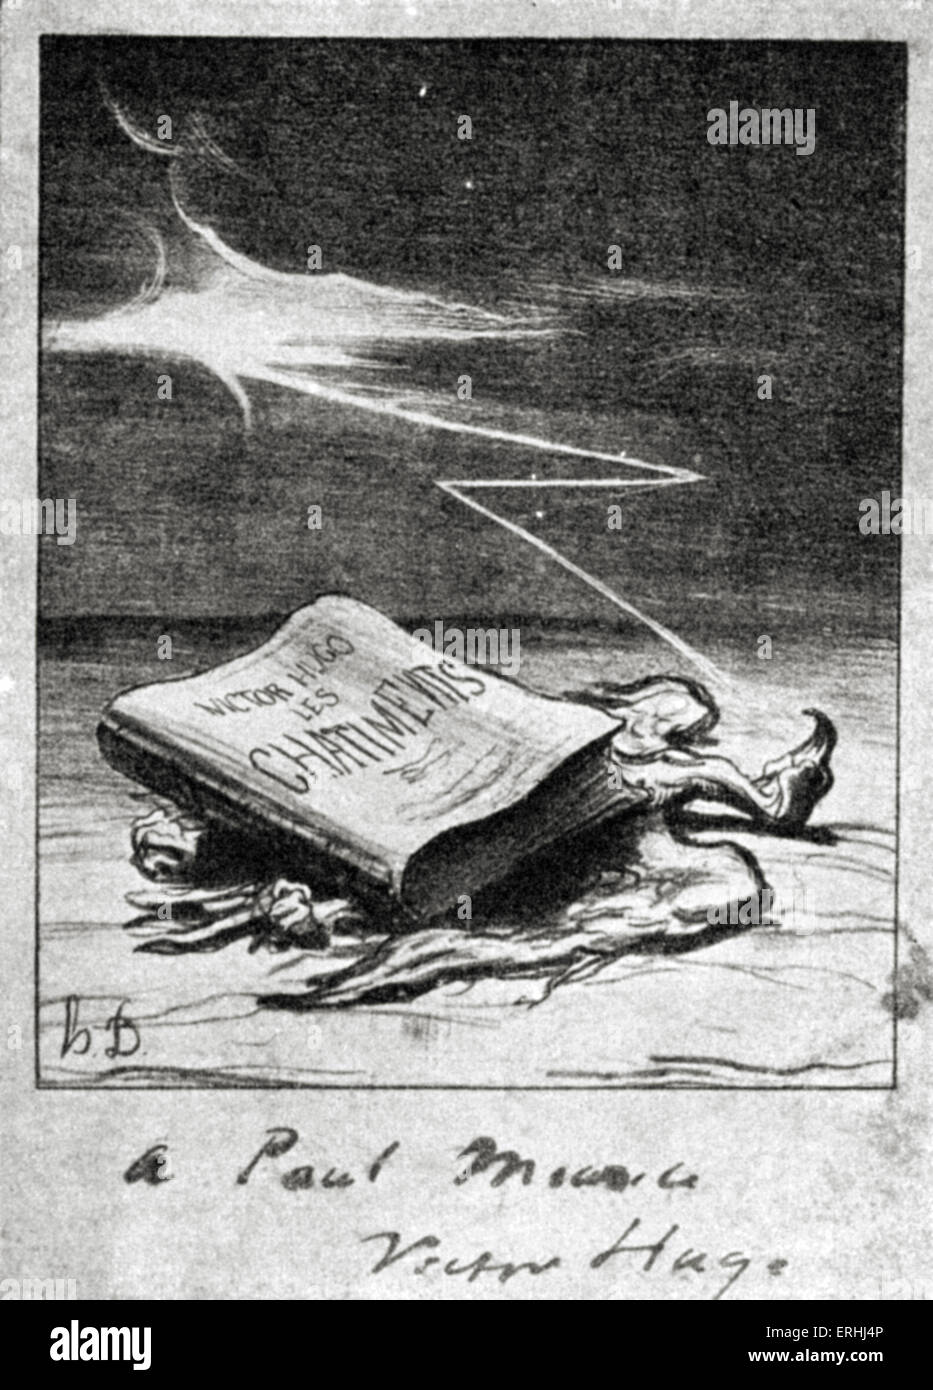 Victor Hugo - page de titre du recueil de poèmes "Les Châtiments" (Les peines), Paris 1870. Avec Banque D'Images